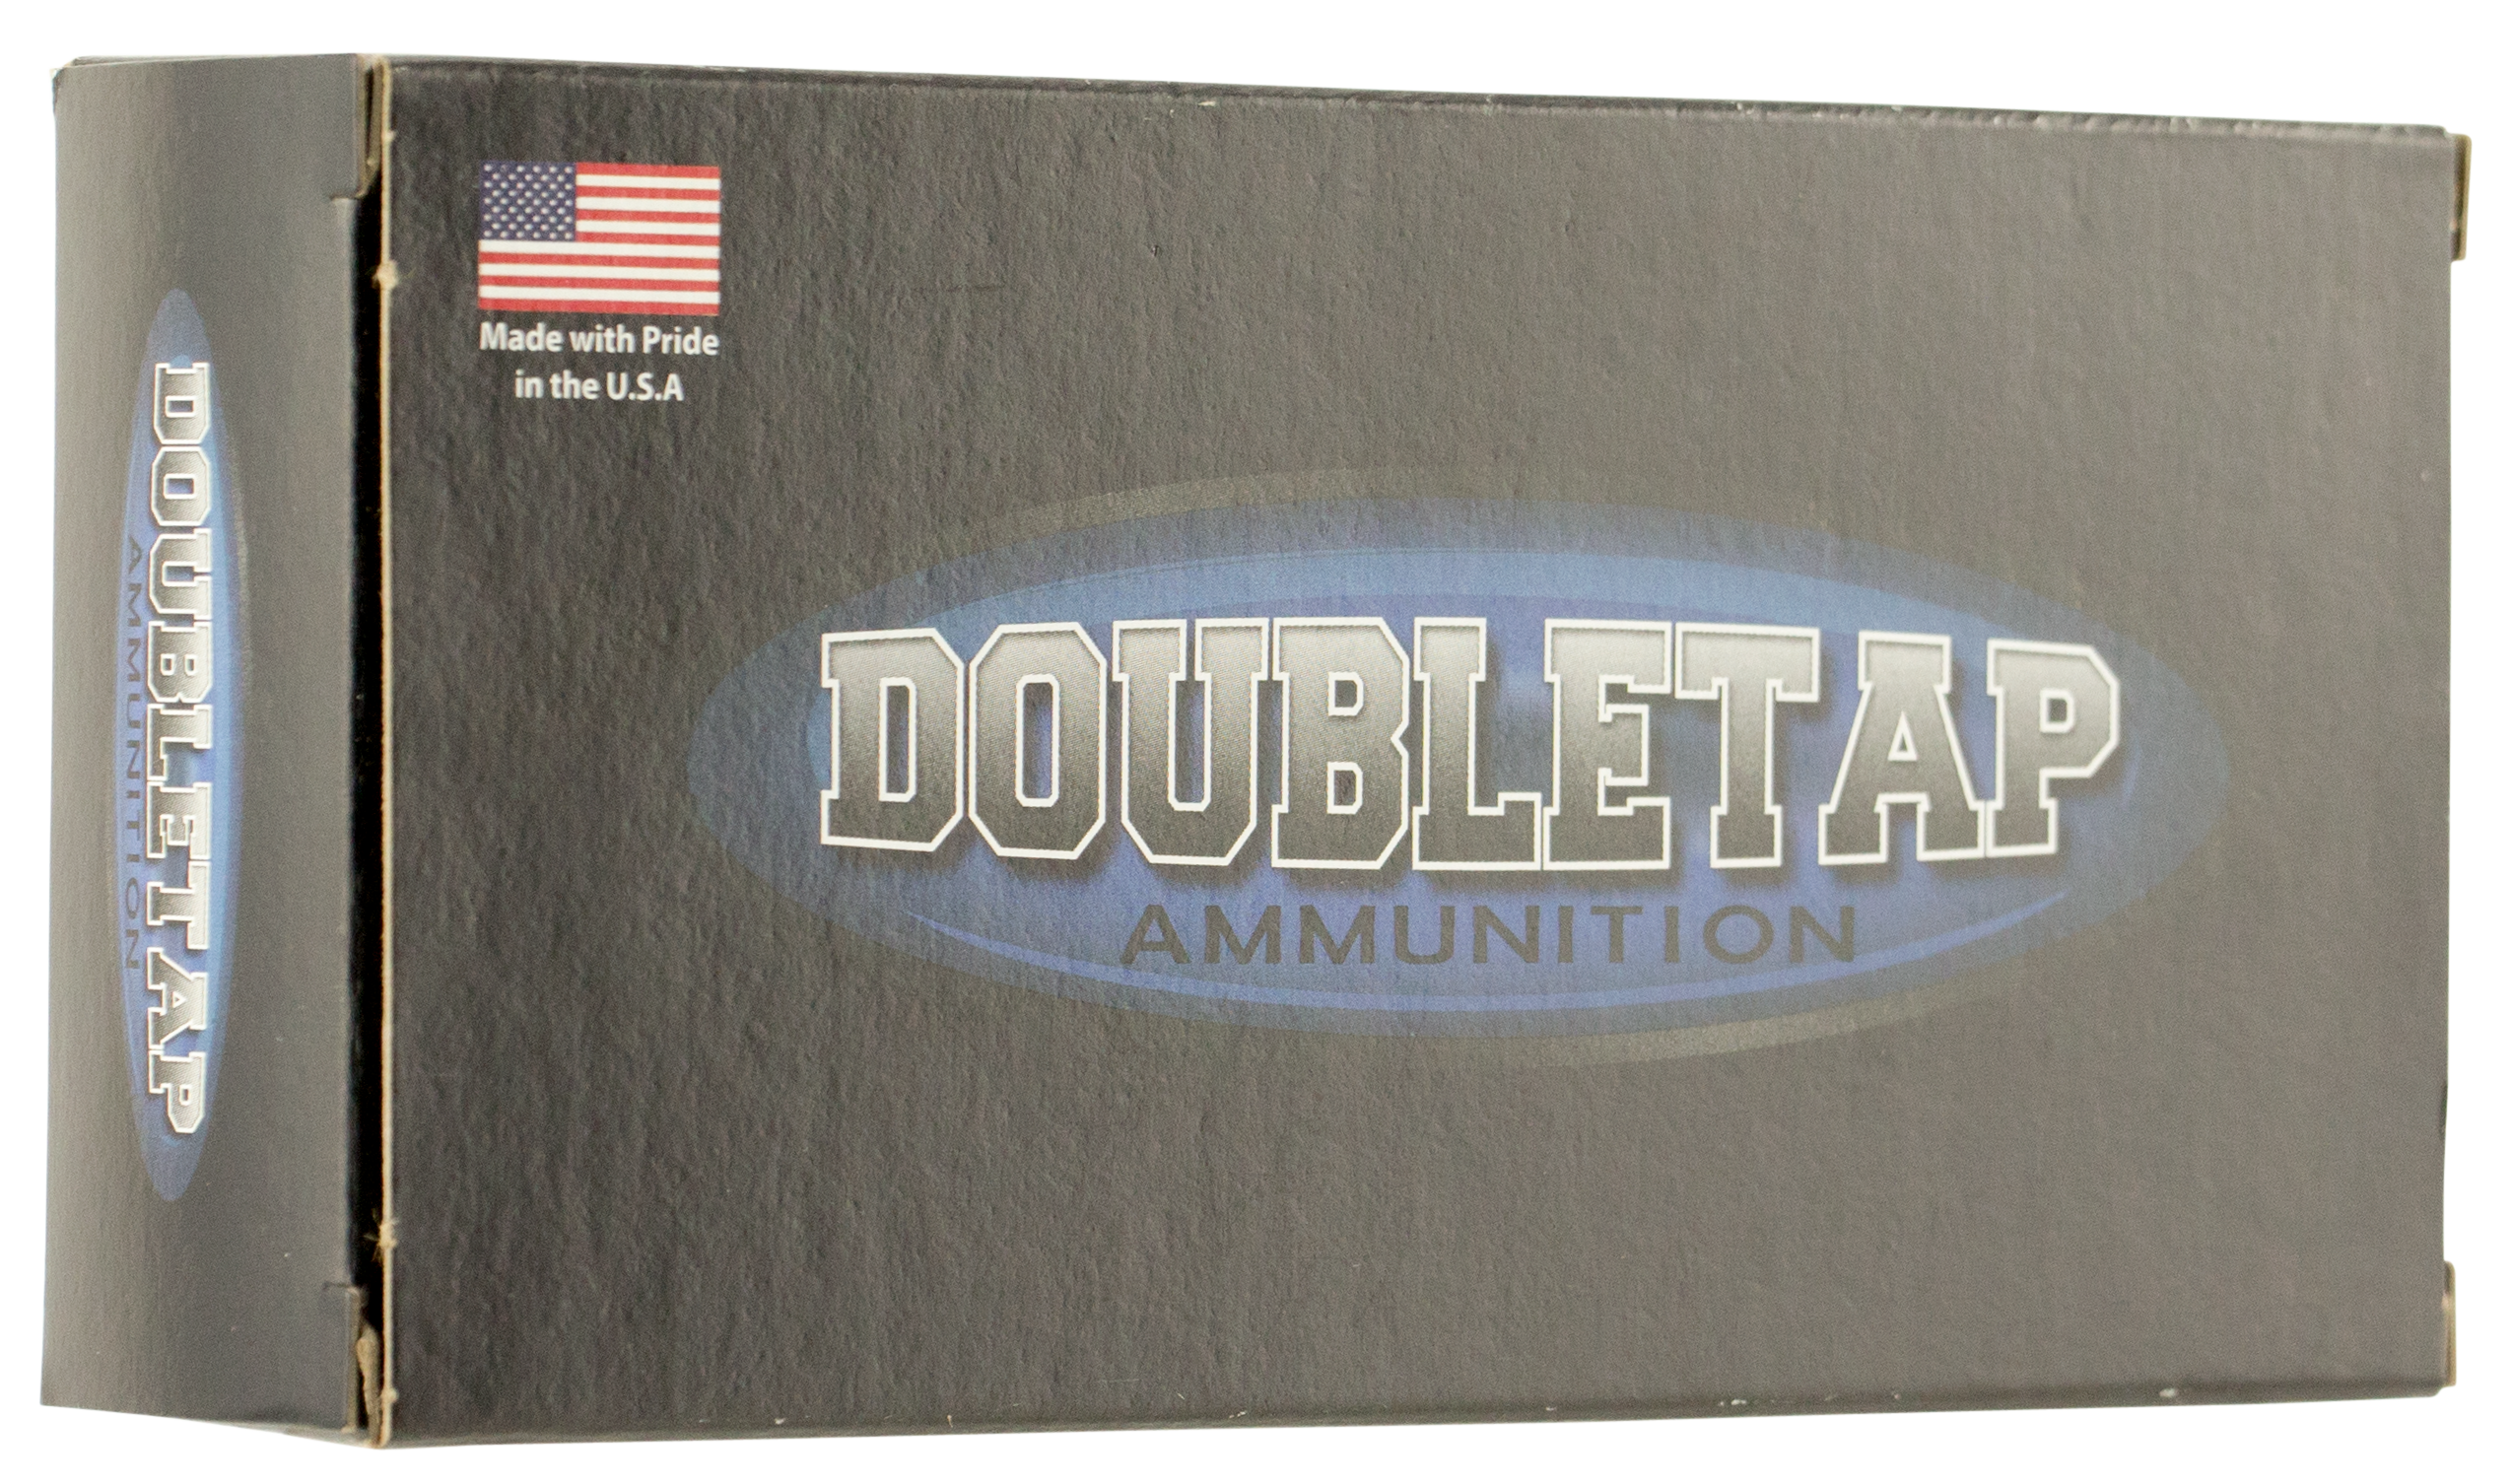 doubletap-ammunition-dt-hunter-358w200x-skogen-s-gun-supply